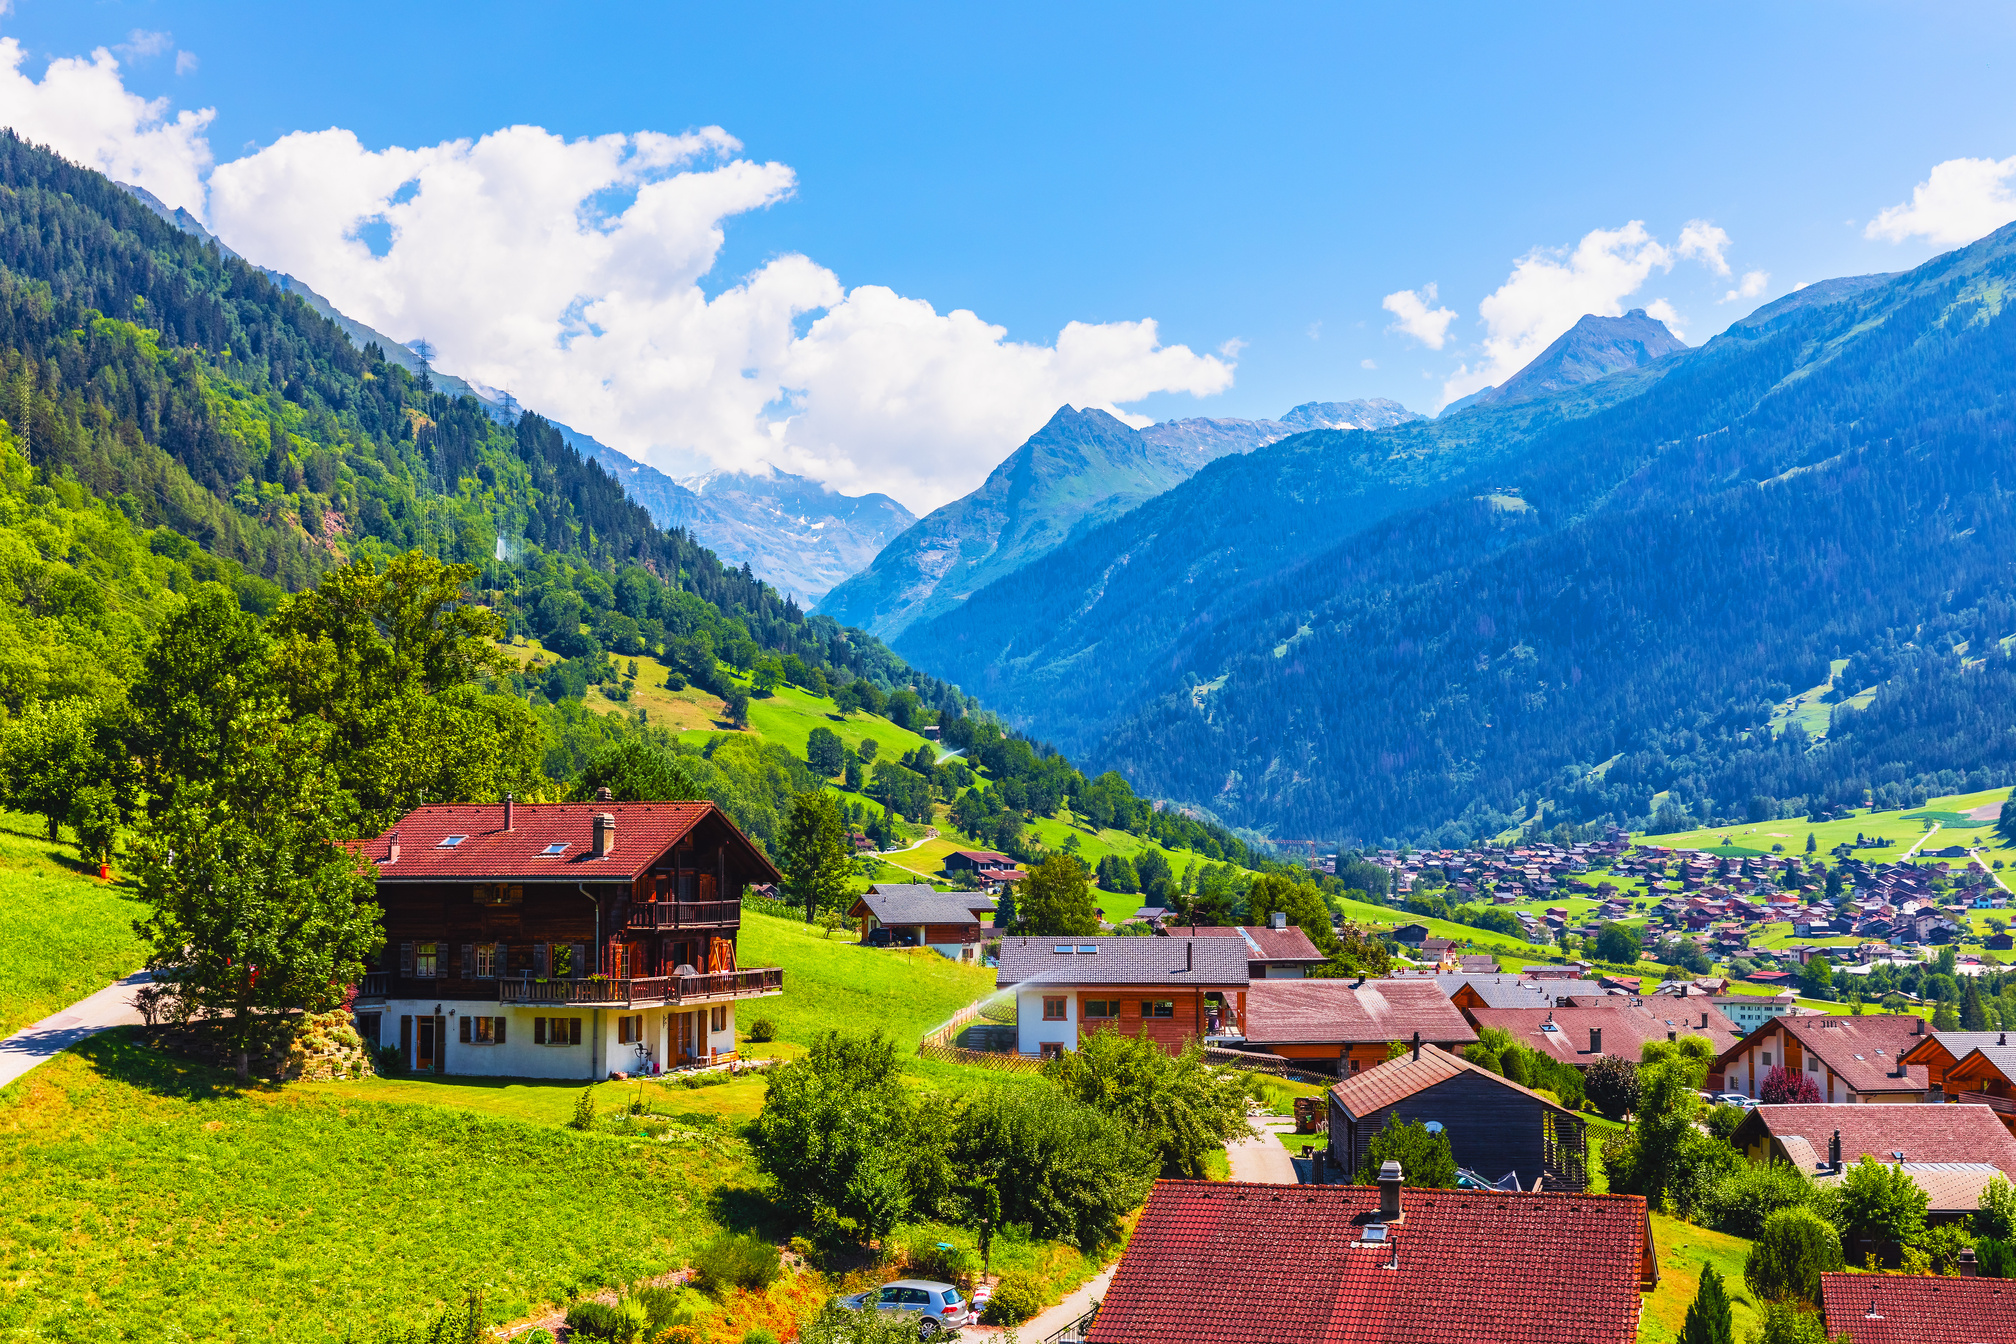 Mountain village in Alps, Switzerland